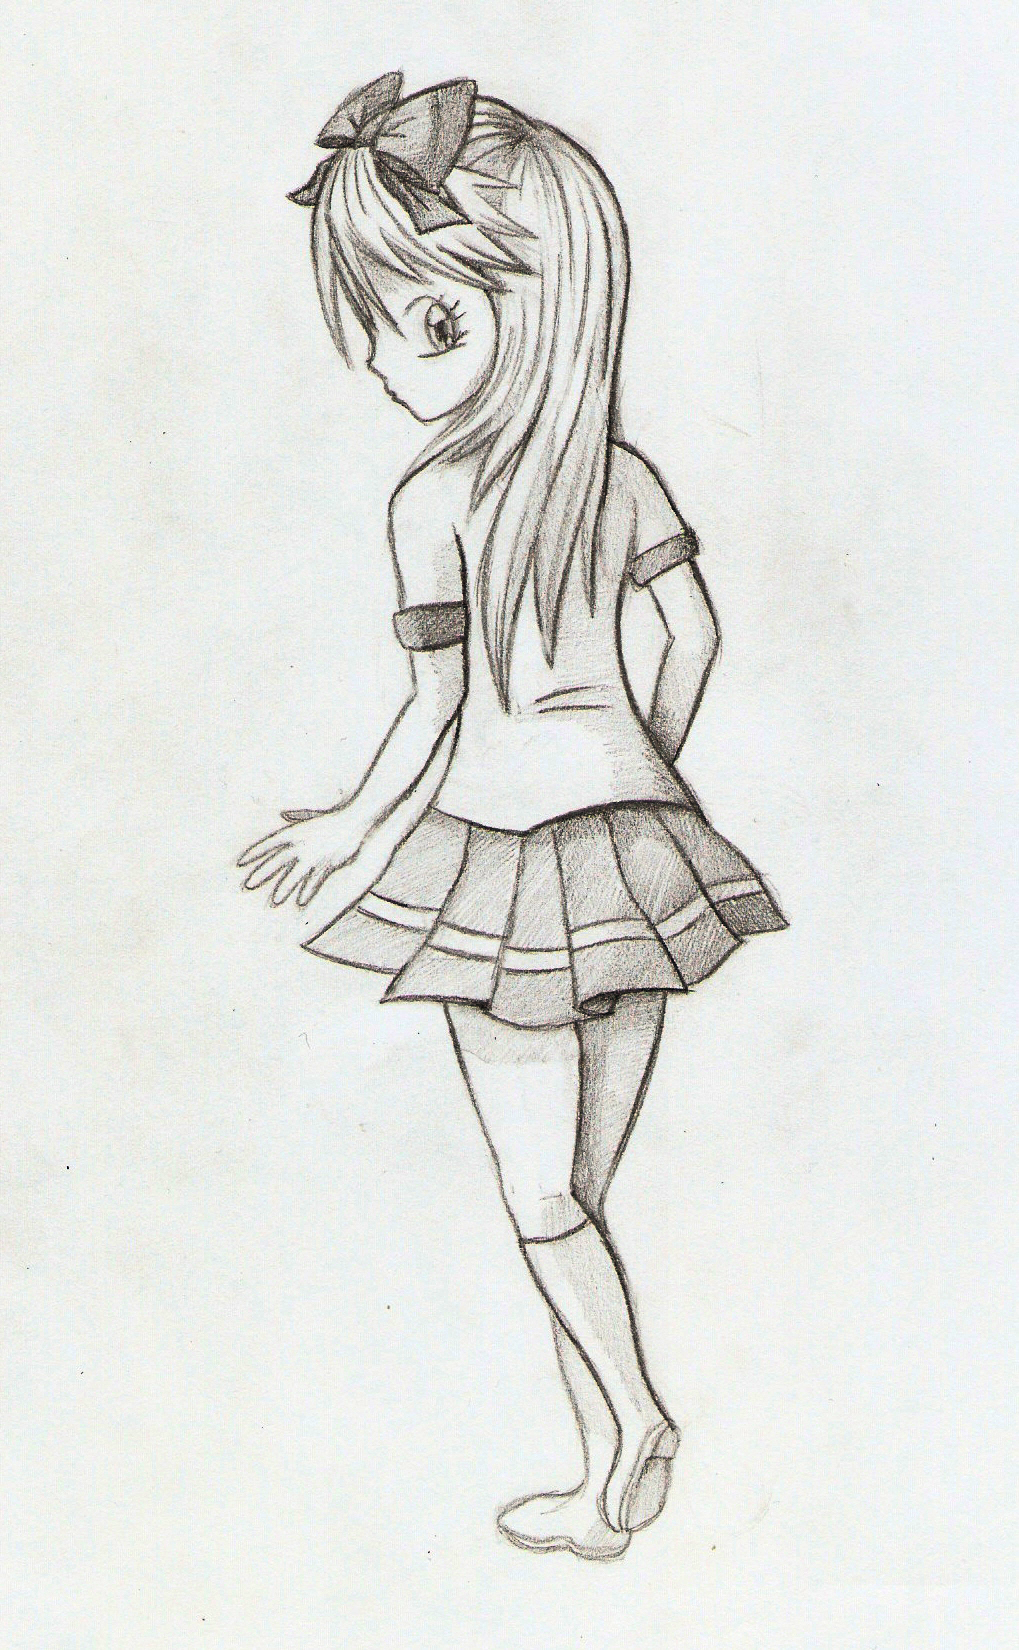 Anime Girl Back by Zero-Rtist on DeviantArt